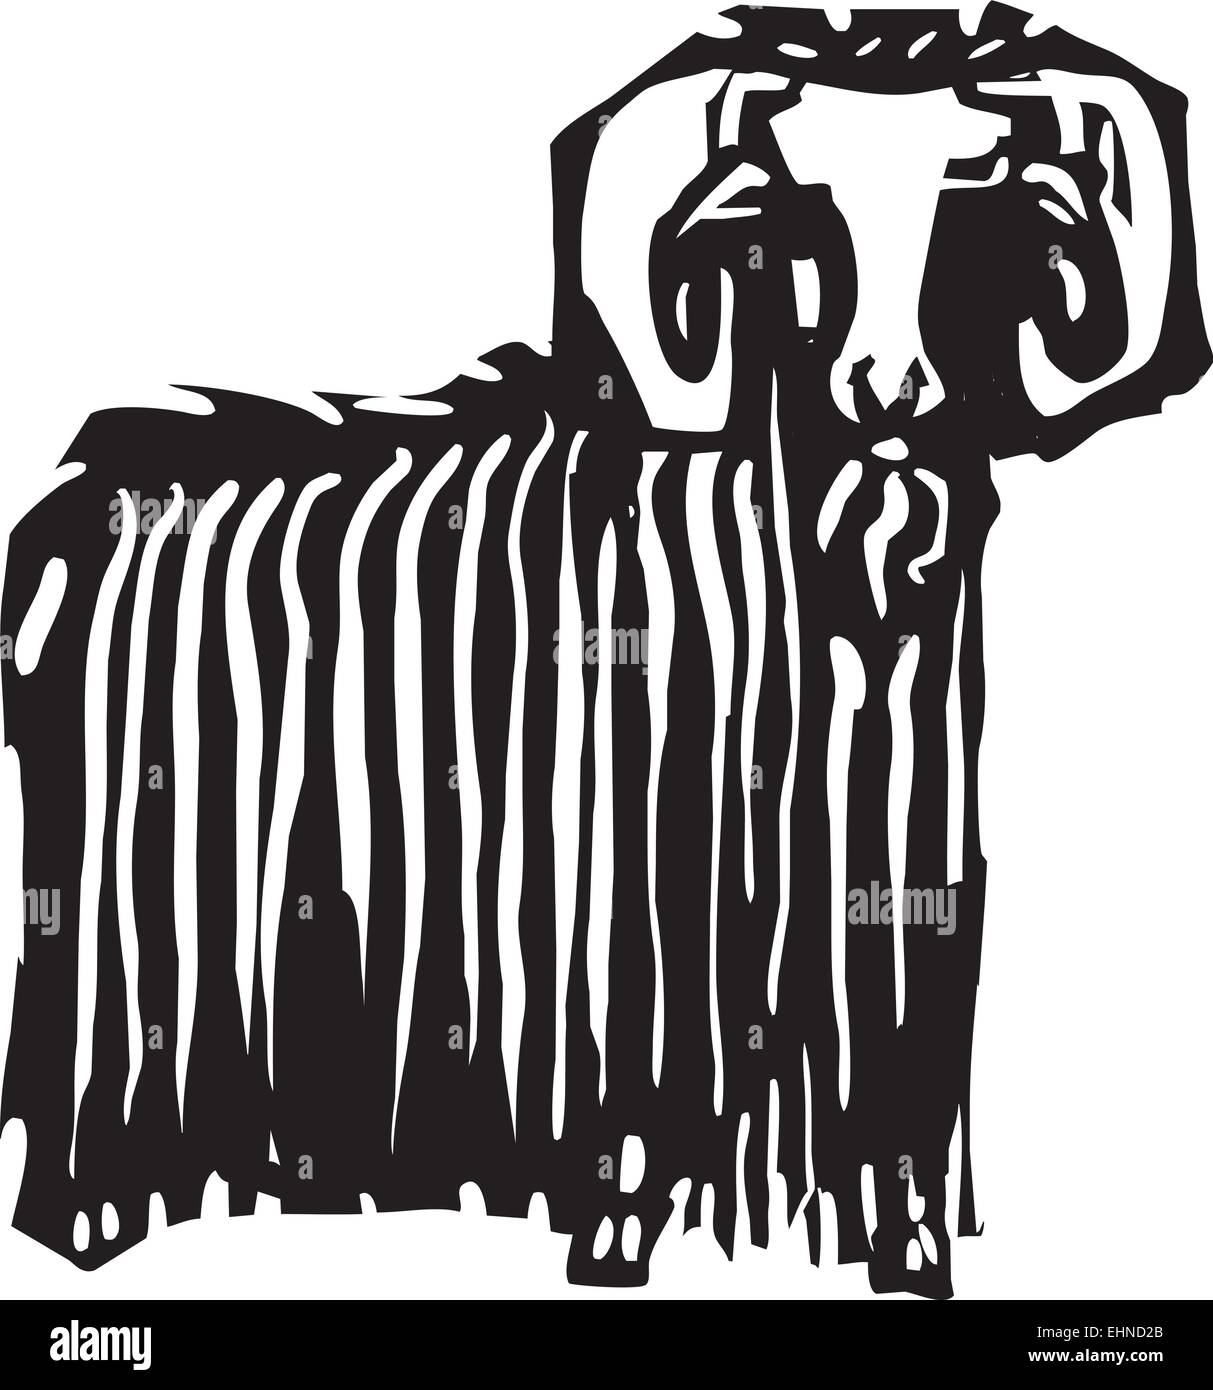 Xylographie expressionniste style image d'un ram ou ibex Illustration de Vecteur